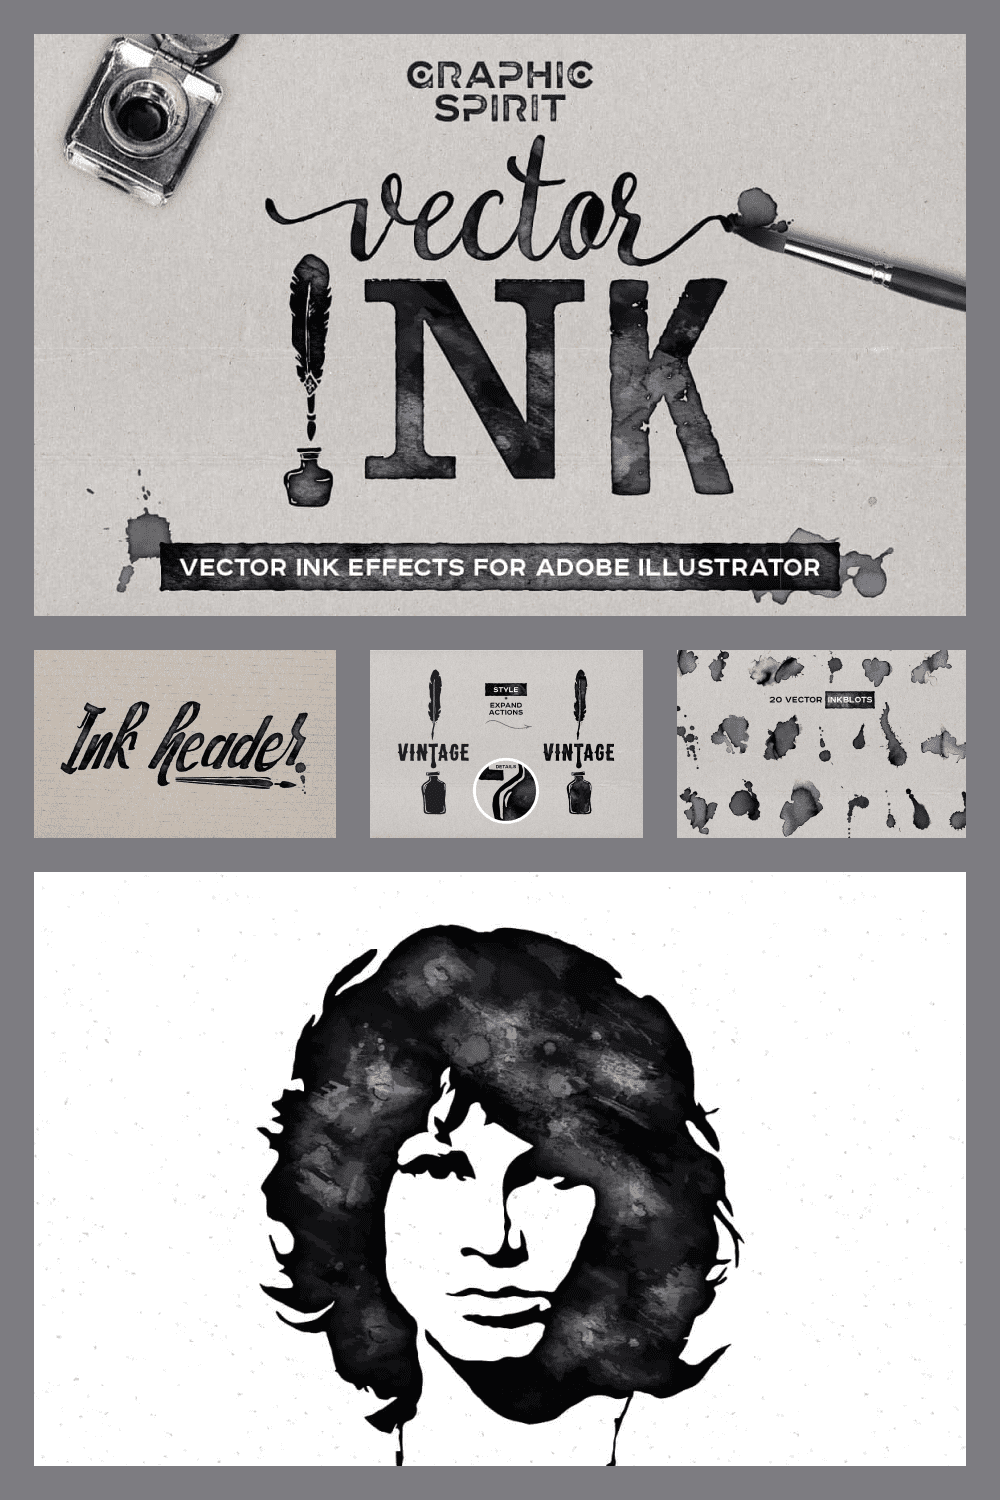 VECTOR Ink Effects For Adobe Illustrator - just $9 - MasterBundles - Pinterest Collage Image.